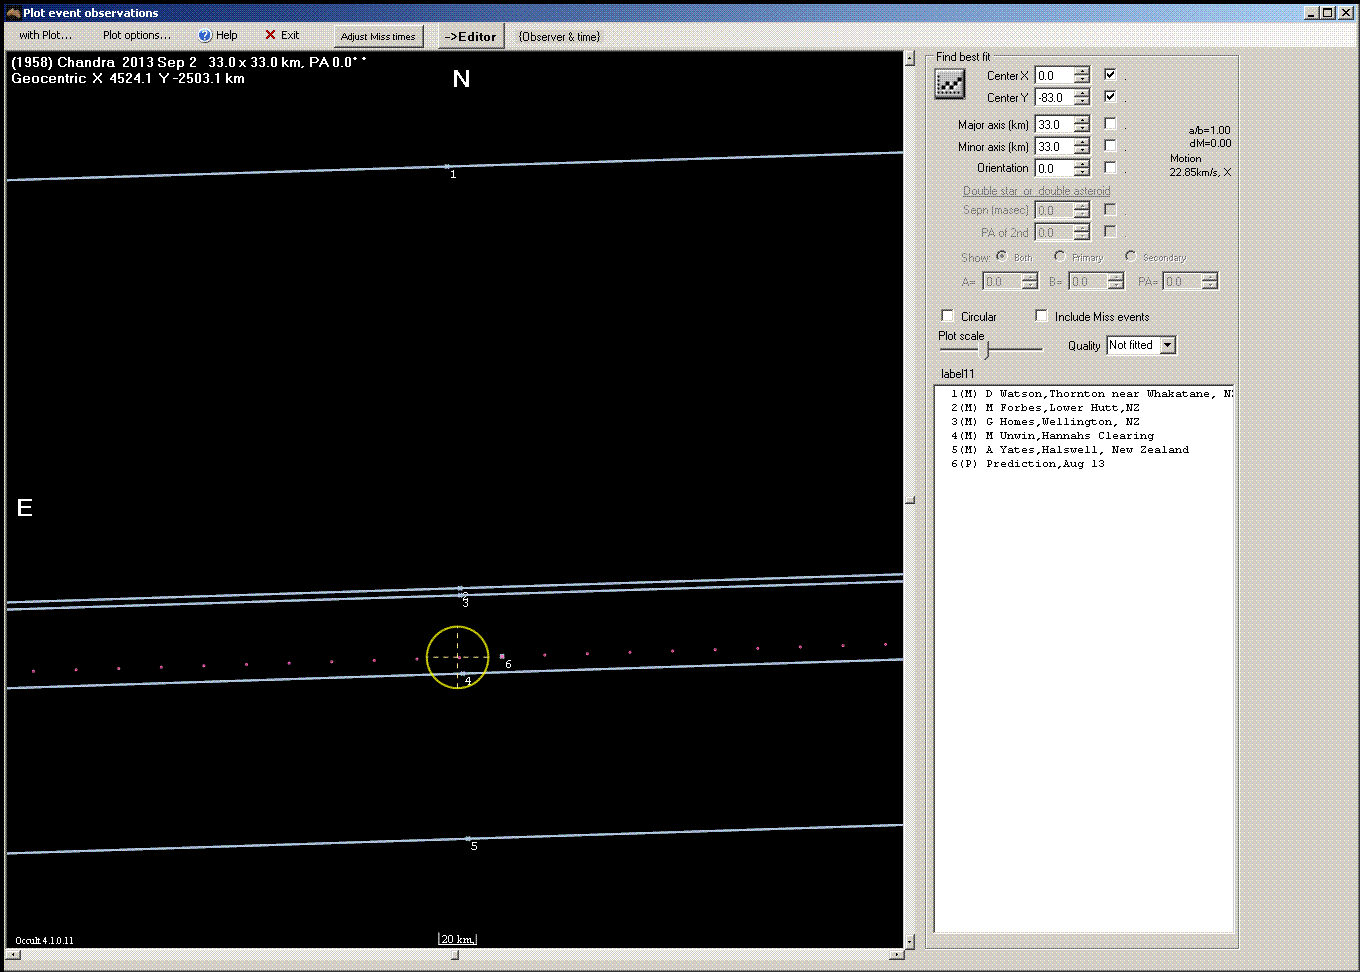 Chandra occultation - 2013 September 02